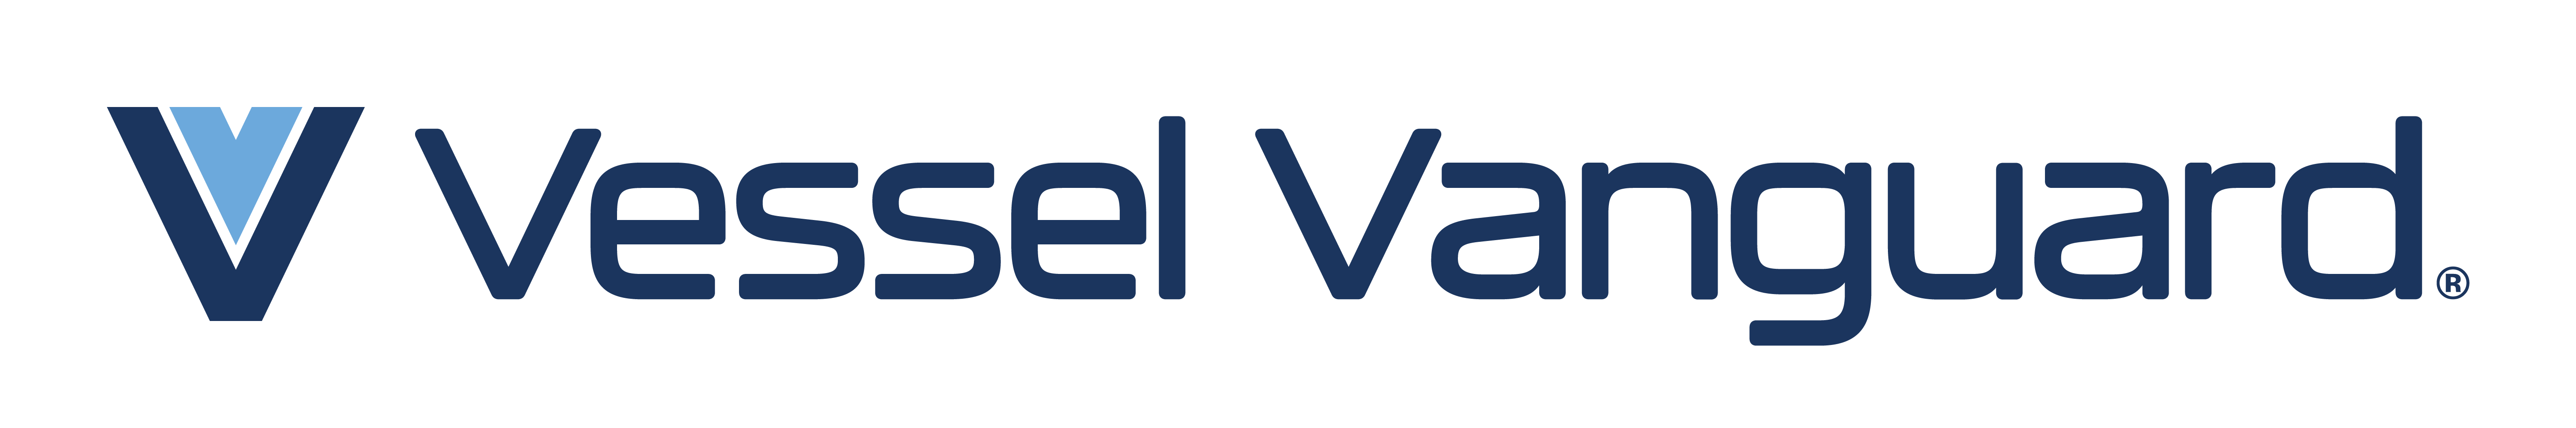 Vessel Vanguard logo